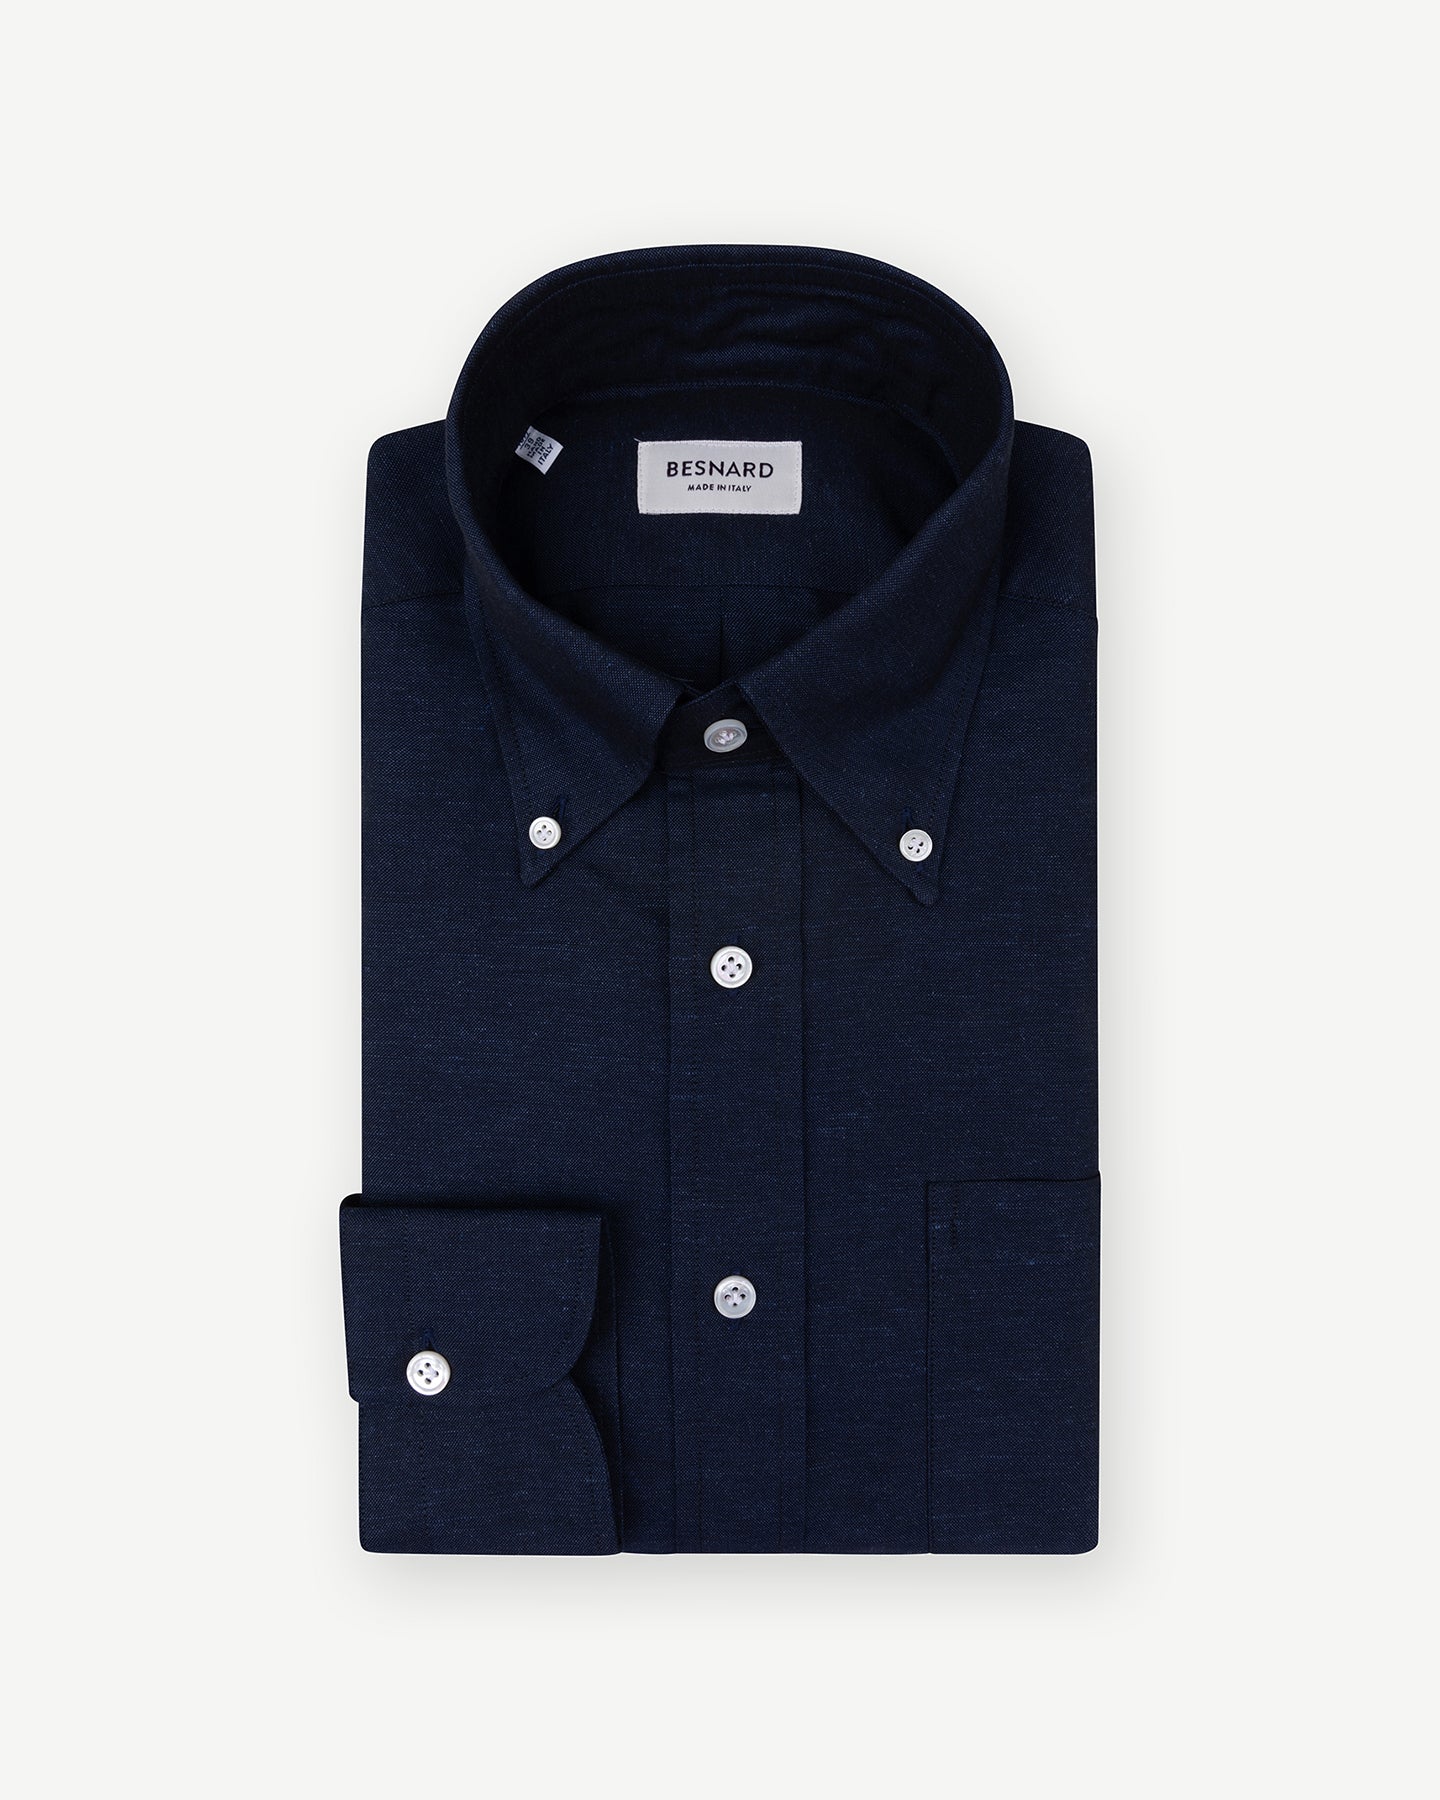 Navy cotton linen shirt